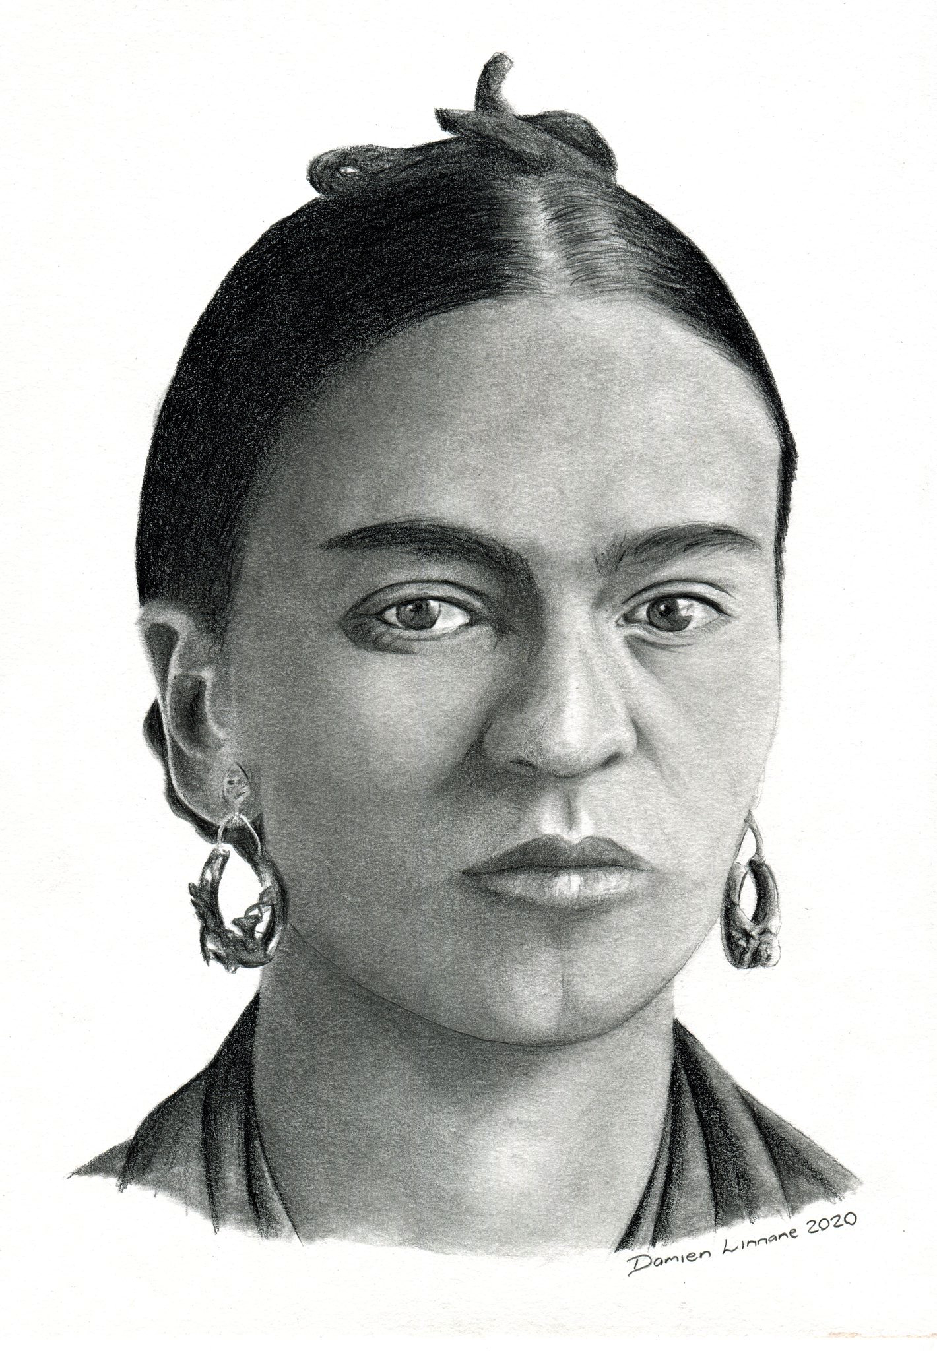 Frida Kahlo - Wikipedia